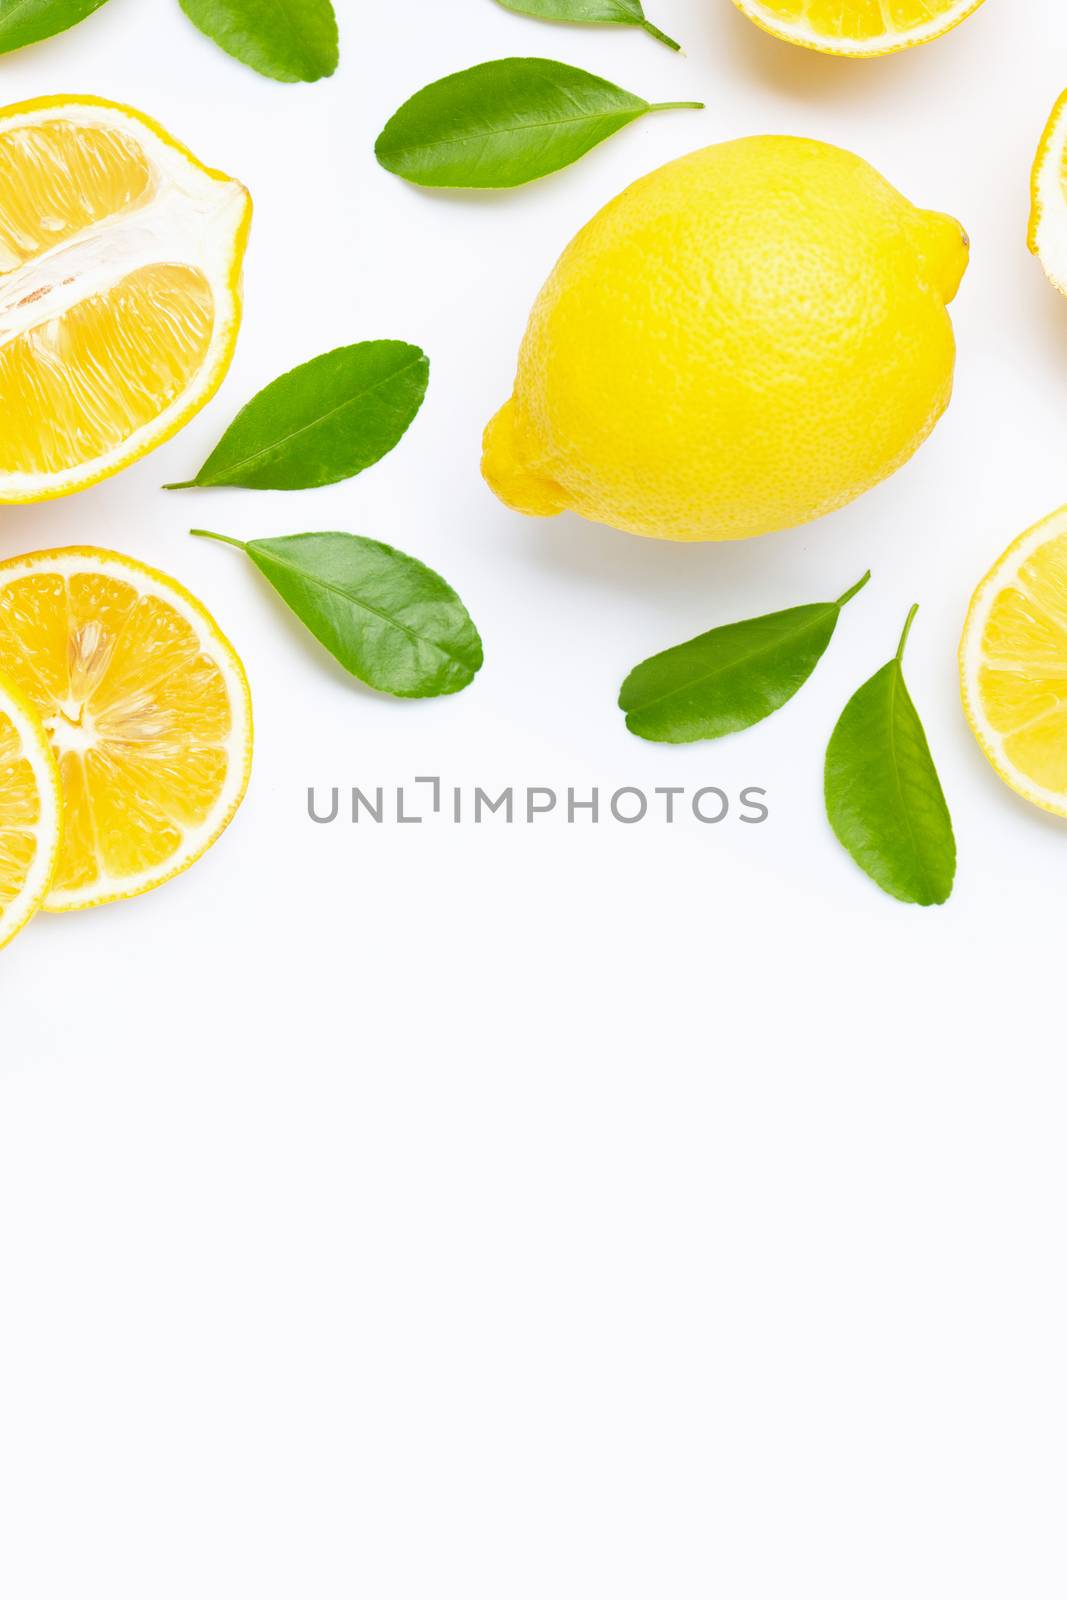 Lemon  isolated on white background.  by Bowonpat